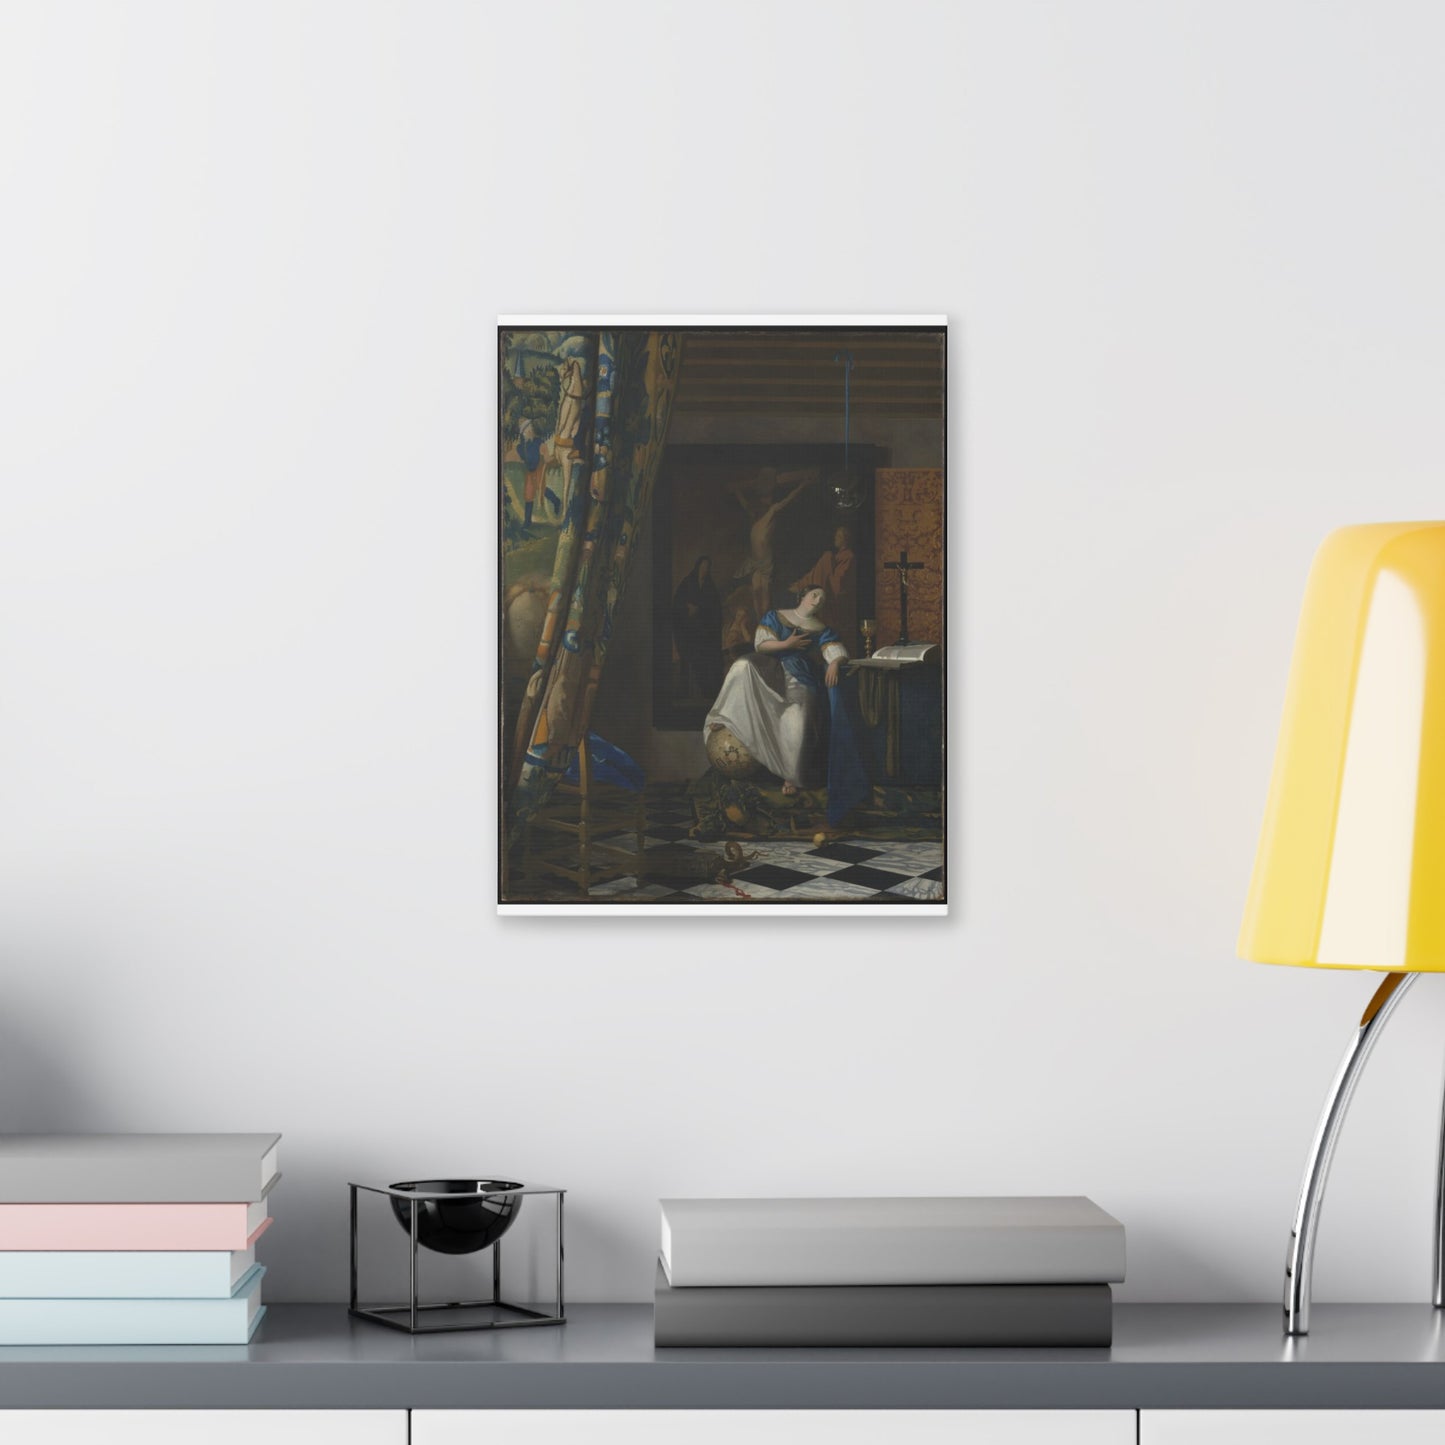 Johannes Vermeer "Allegory of the Catholic Faith"